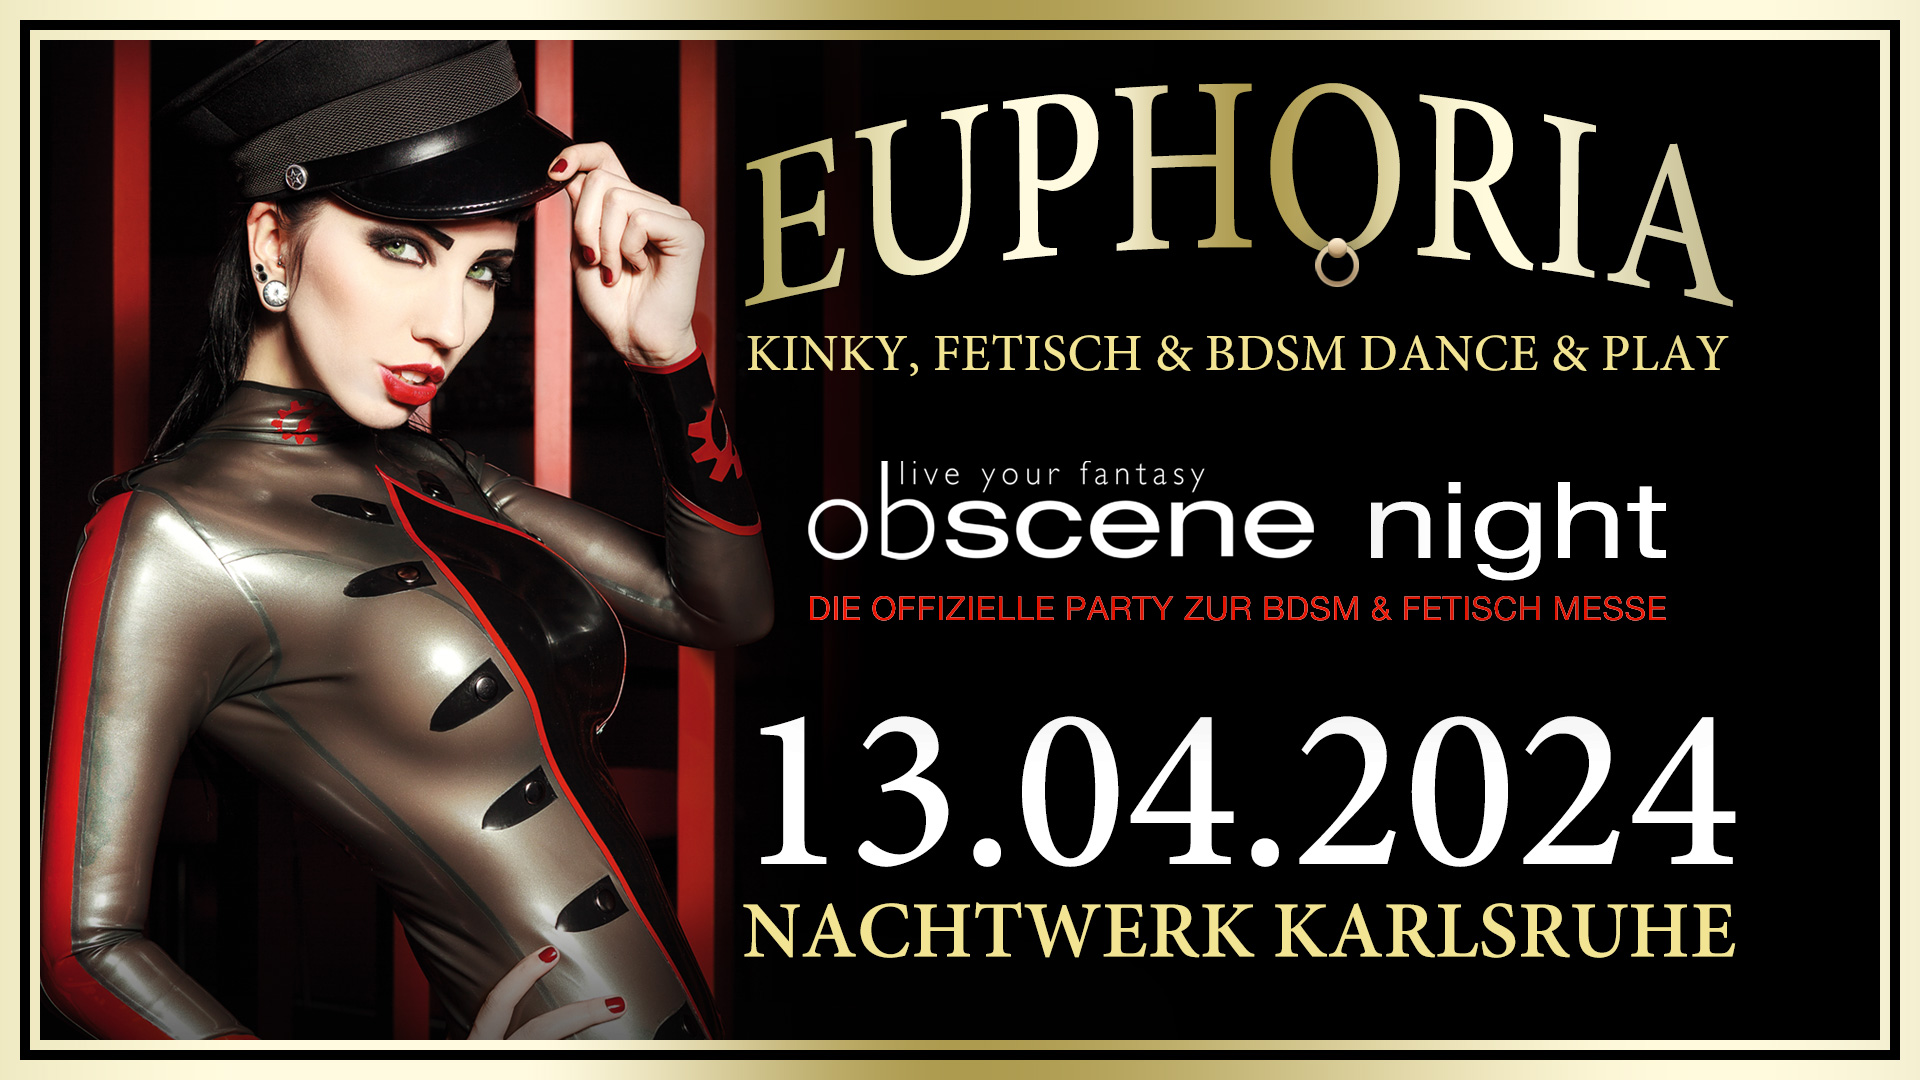 EUPHORIA » Obscene Night - Die Kinky, Fetisch und BDSM Dance & Play Party in Karlsruhe von und mit DJ GILLIAN. Die offizielle Aftershowparty der BDSM & Fetisch Messe obscene 2024.